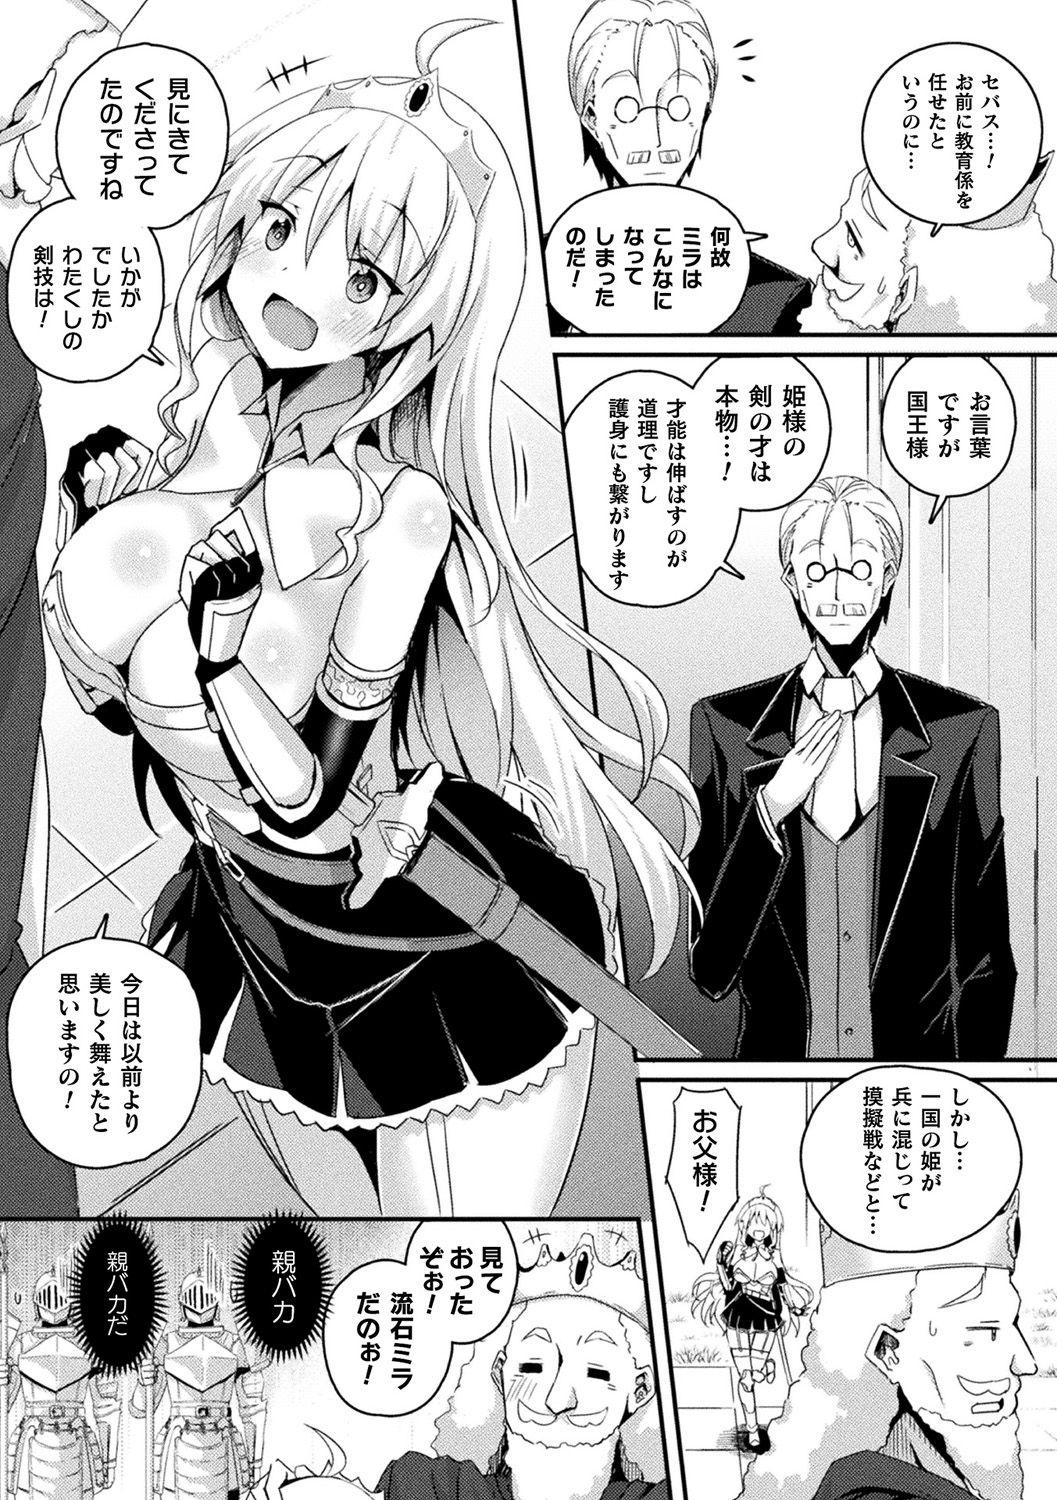 [Anthology] Bessatsu Comic Unreal Ponkotsu Fantasy Heroine H ~Doji o Funde Gyakuten Saretari Ero Trap ni Hamattari!?~ Vol. 2 [Digital] 3